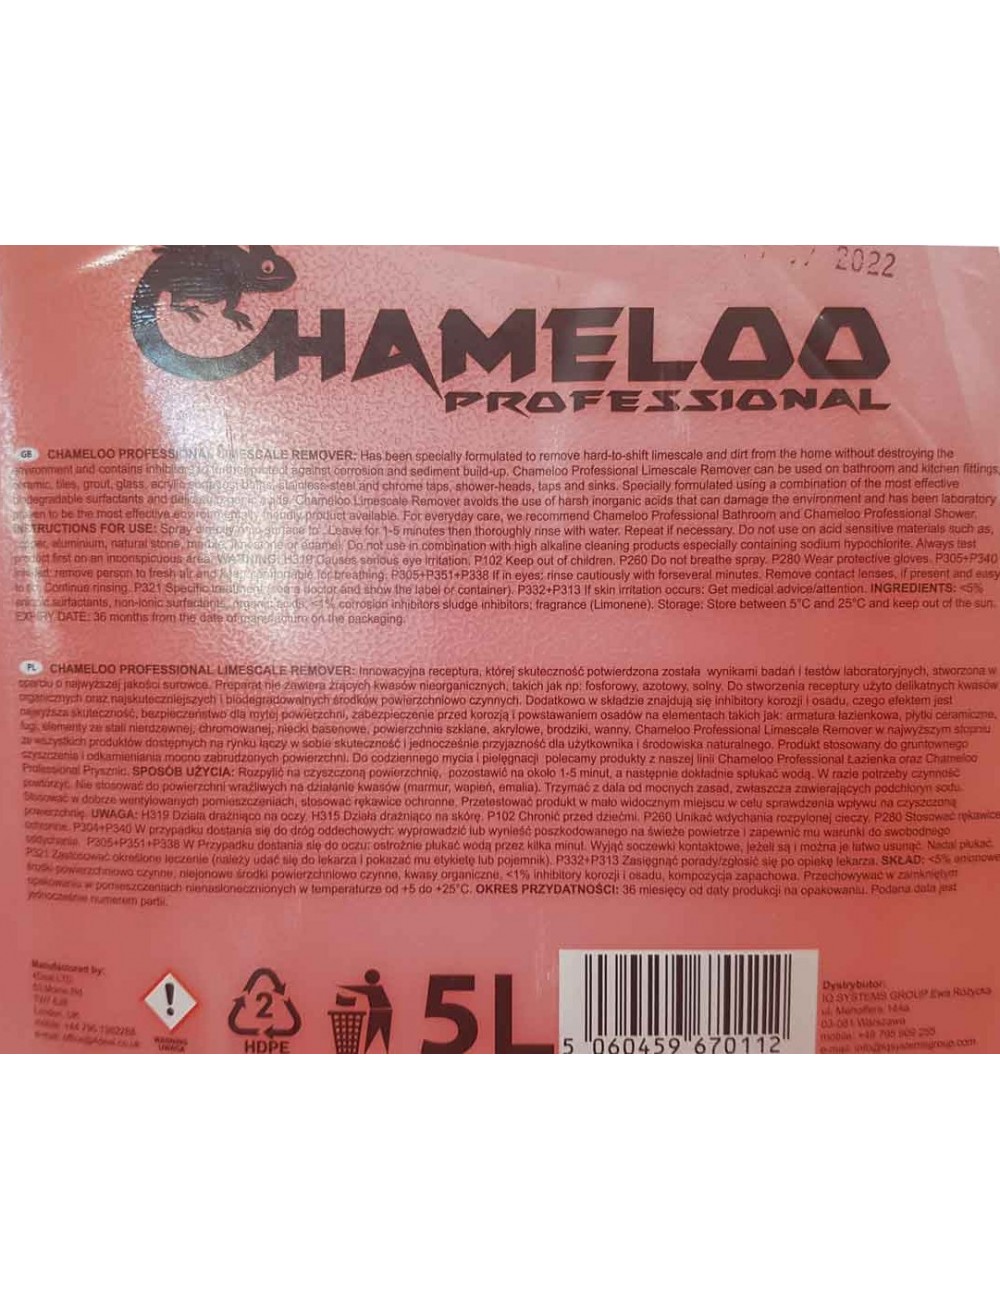 Chameloo Płyn Czyszcząco-Odkamieniający LR-1218 5 L